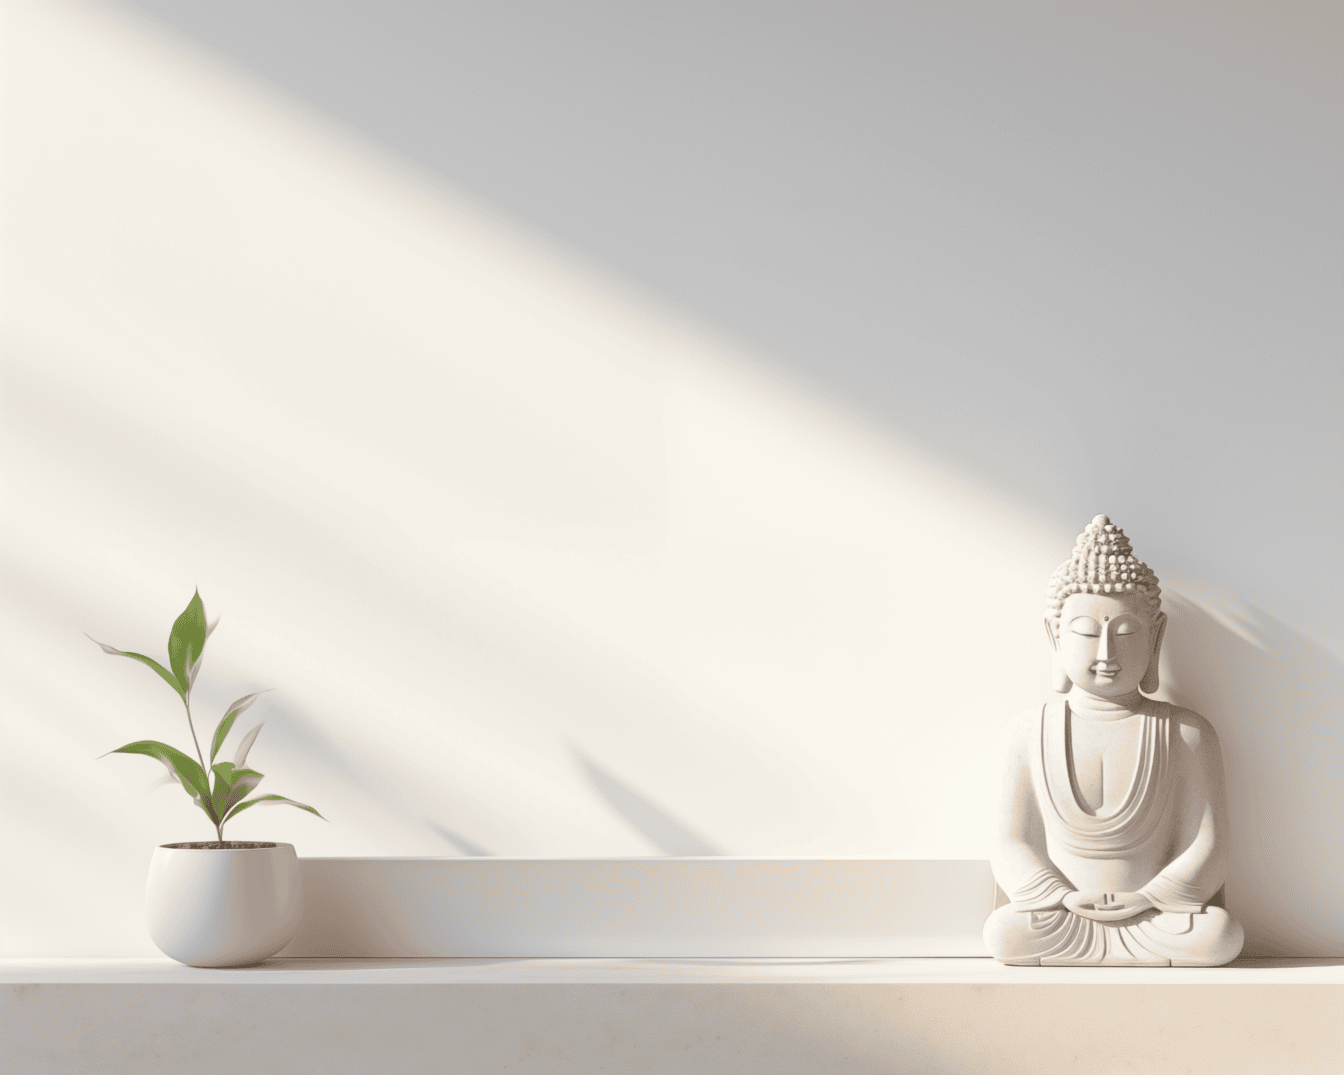 Patung putih seorang buddha yang sedang bermeditasi dalam posisi teratai di rak di dinding putih di bawah bayangan lembut